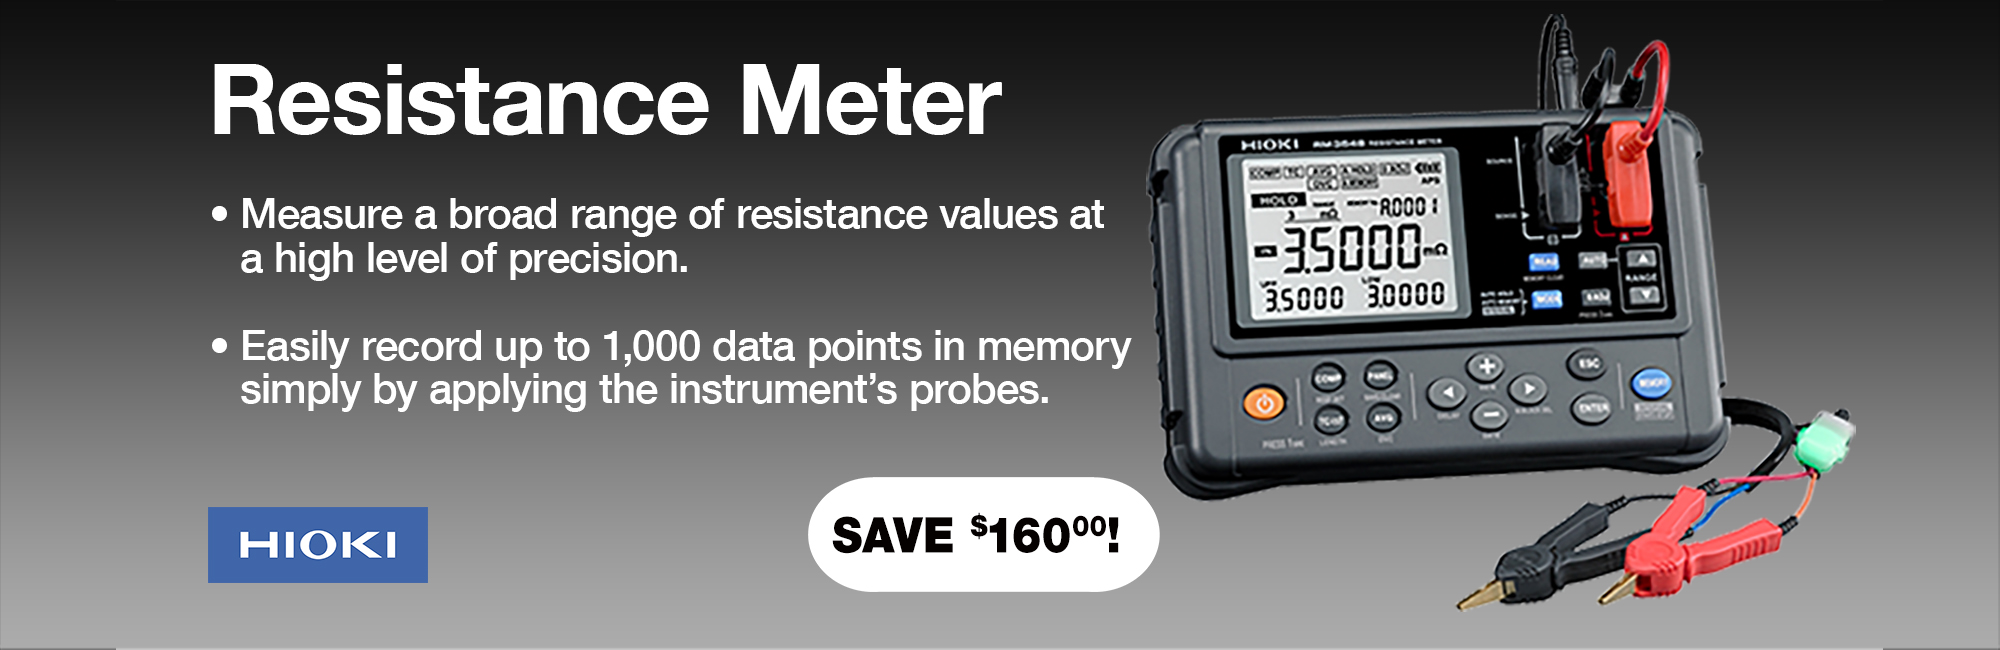 Resistance Meter save $160